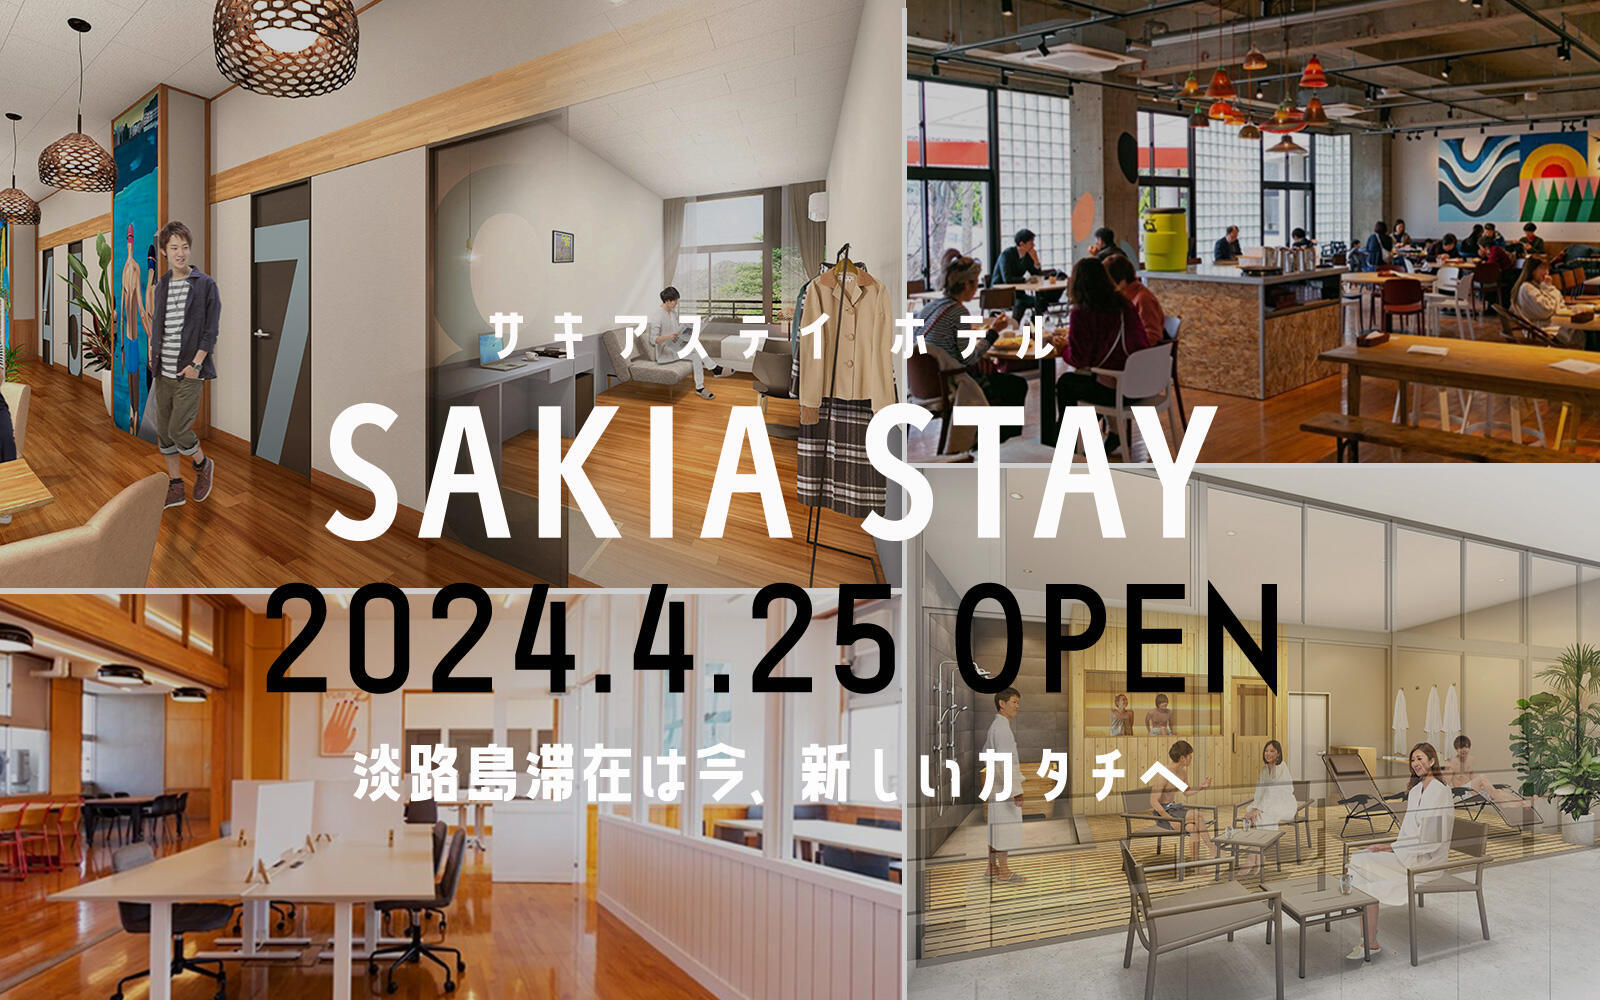 淡路島滞在は今、新しいカタチへ。旧小学校リノベーションの複合施設SAKIAにホテル「SAKIA STAY」が2024年4月25日オープン！予約受付中